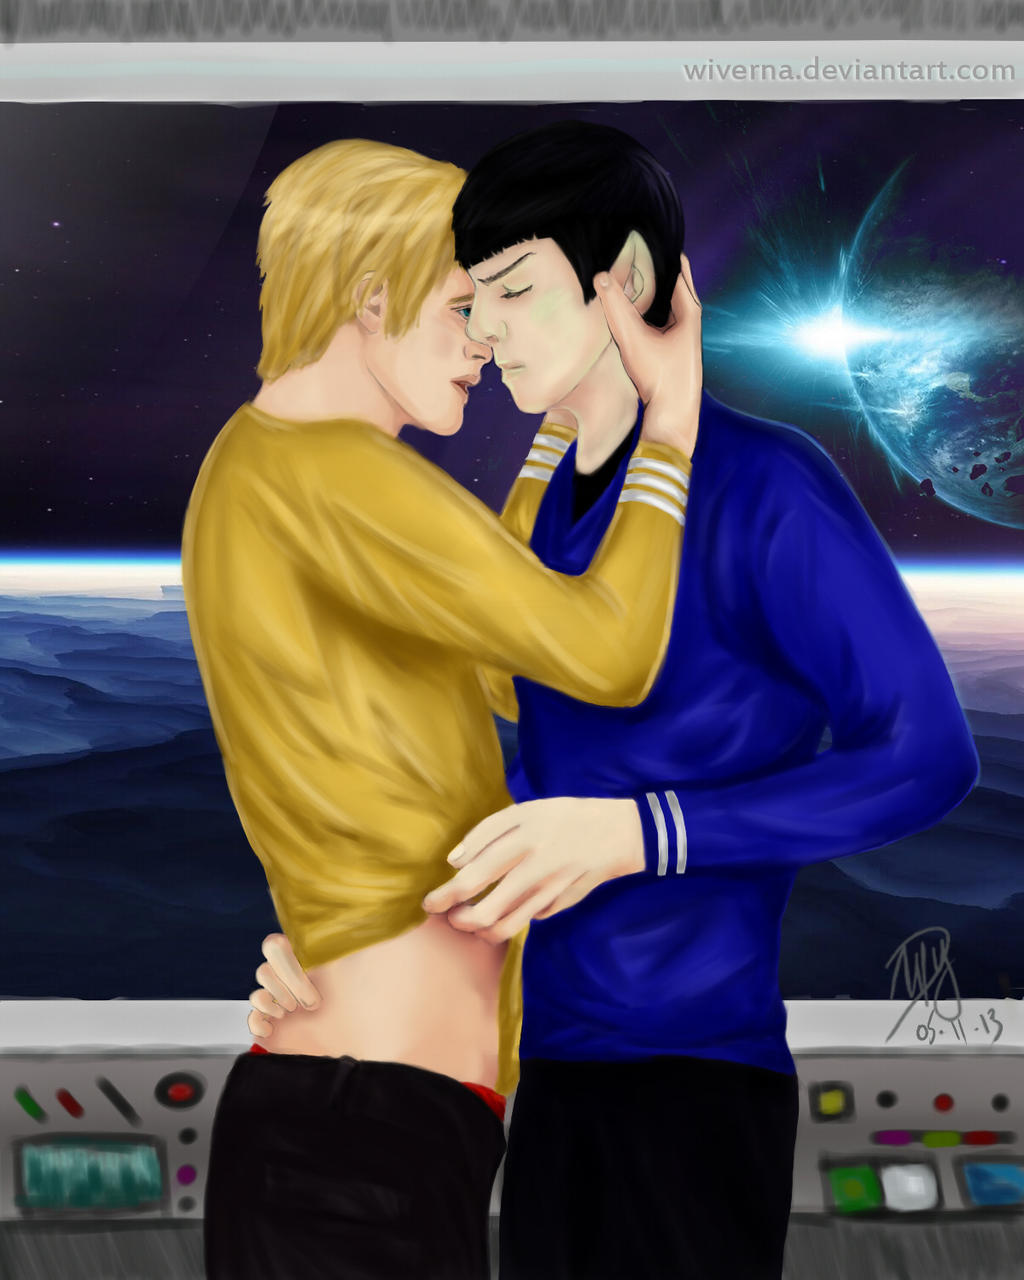 Résultat de recherche d'images pour "gay love in the space"